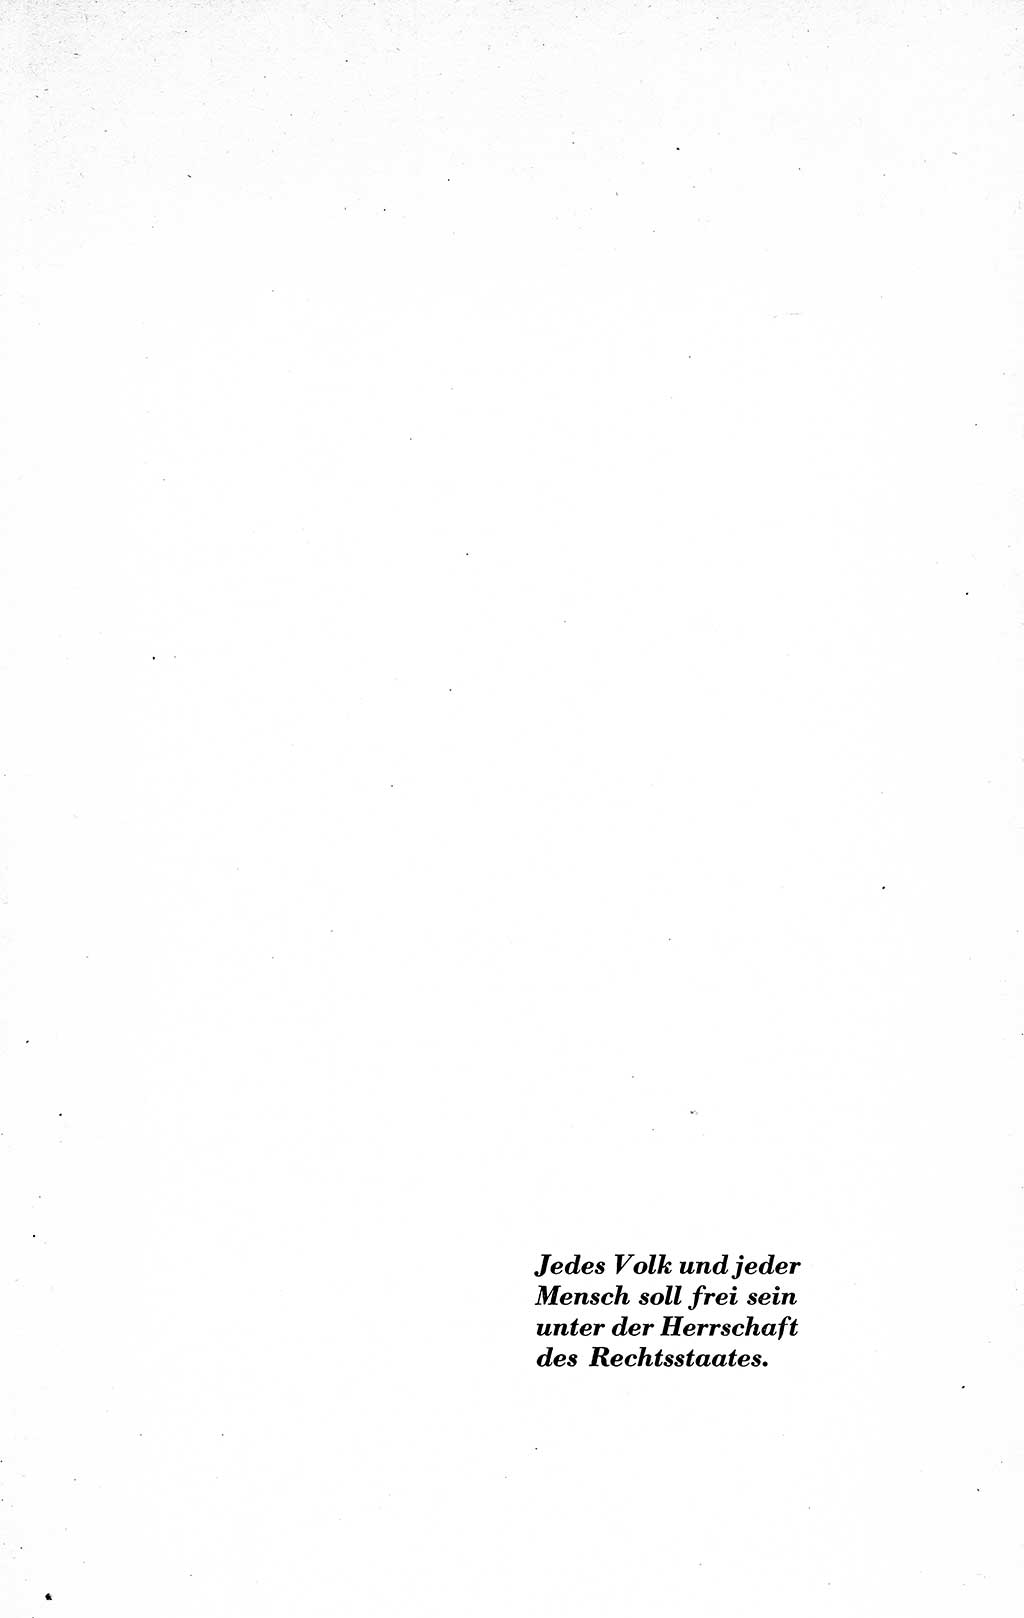 Recht in Fesseln, Dokumente, Internationale Juristen-Kommission [Bundesrepublik Deutschland (BRD)] 1955, Seite 3 (R. Dok. IJK BRD 1955, S. 3)